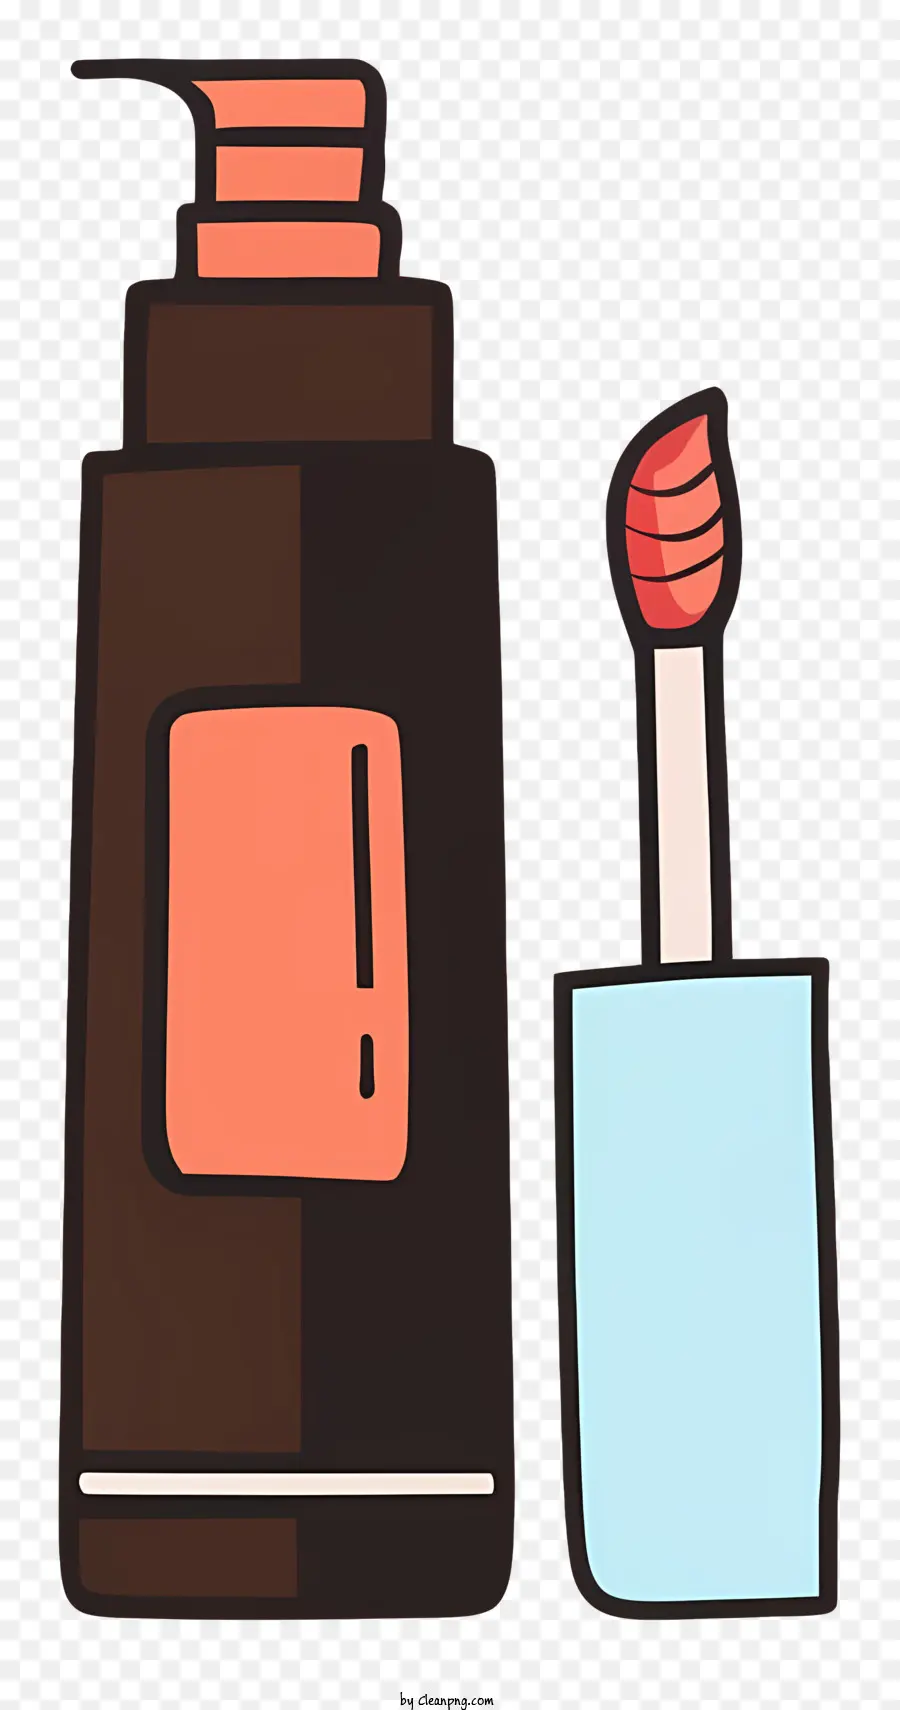 Rote Pinselflasche Flüssigkeit braun - Rote Farbe auf Pinsel und Flasche, brauner Hintergrund